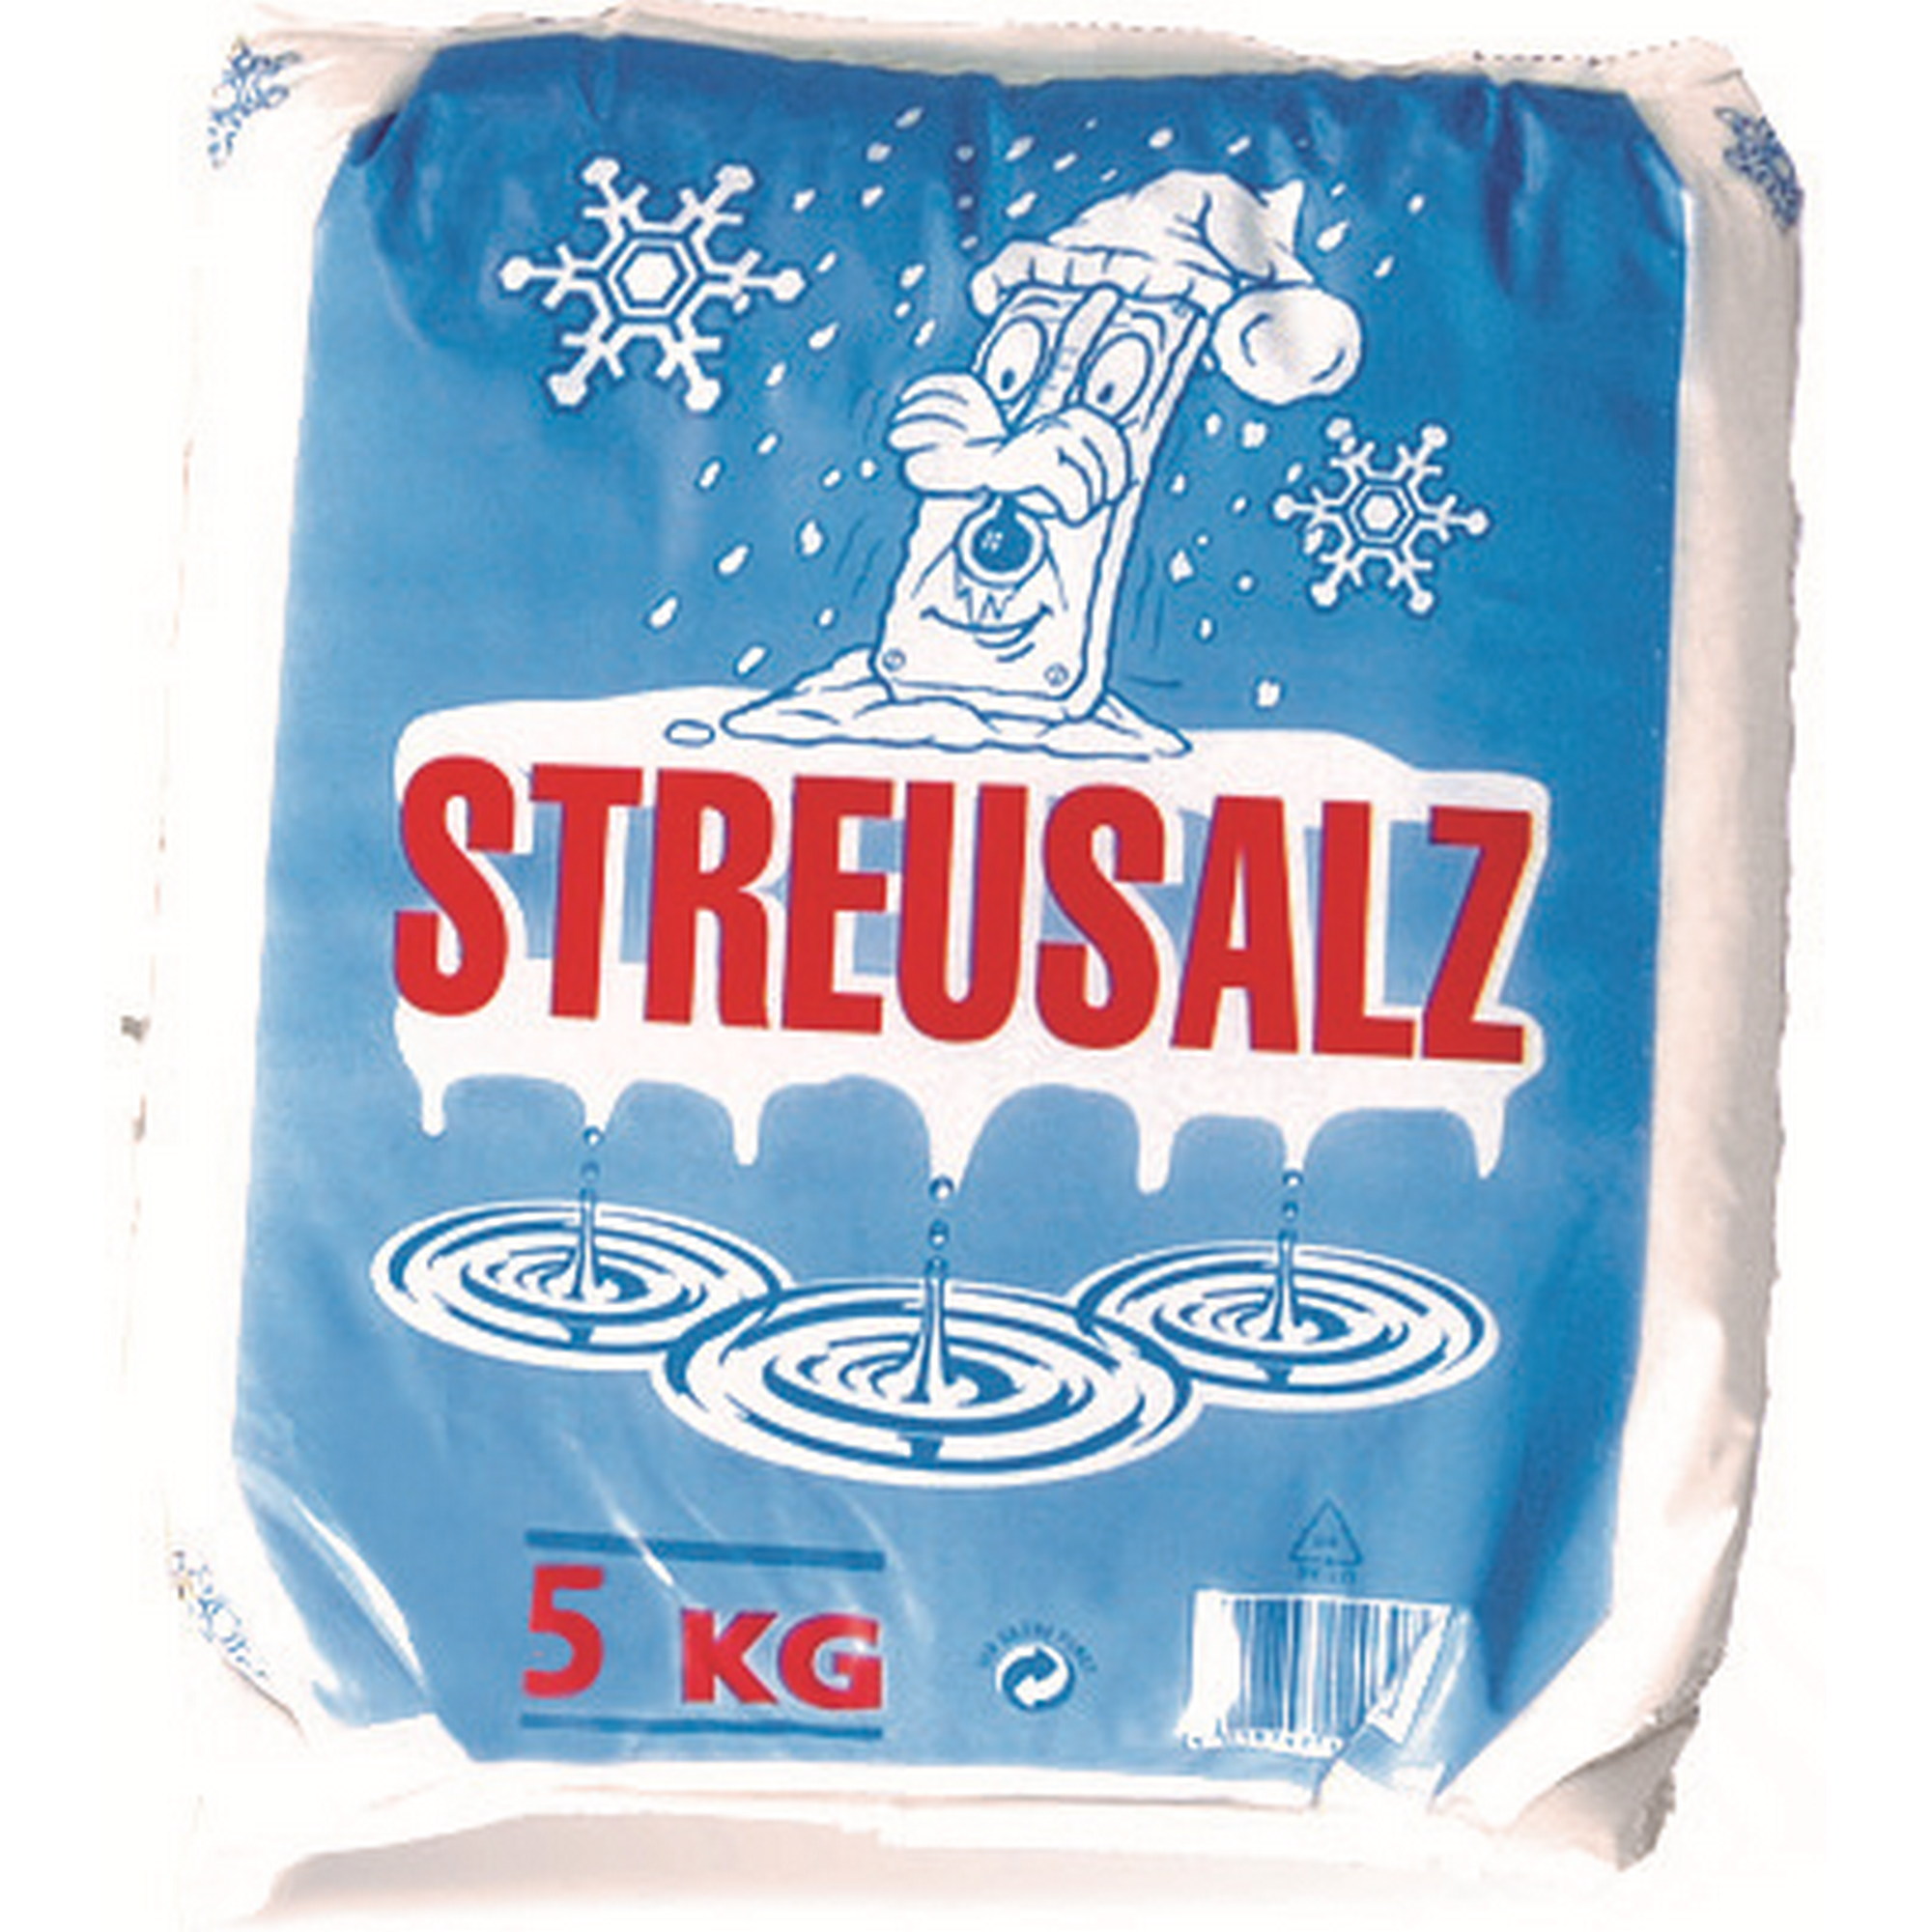 Streusalz 5 kg + product picture